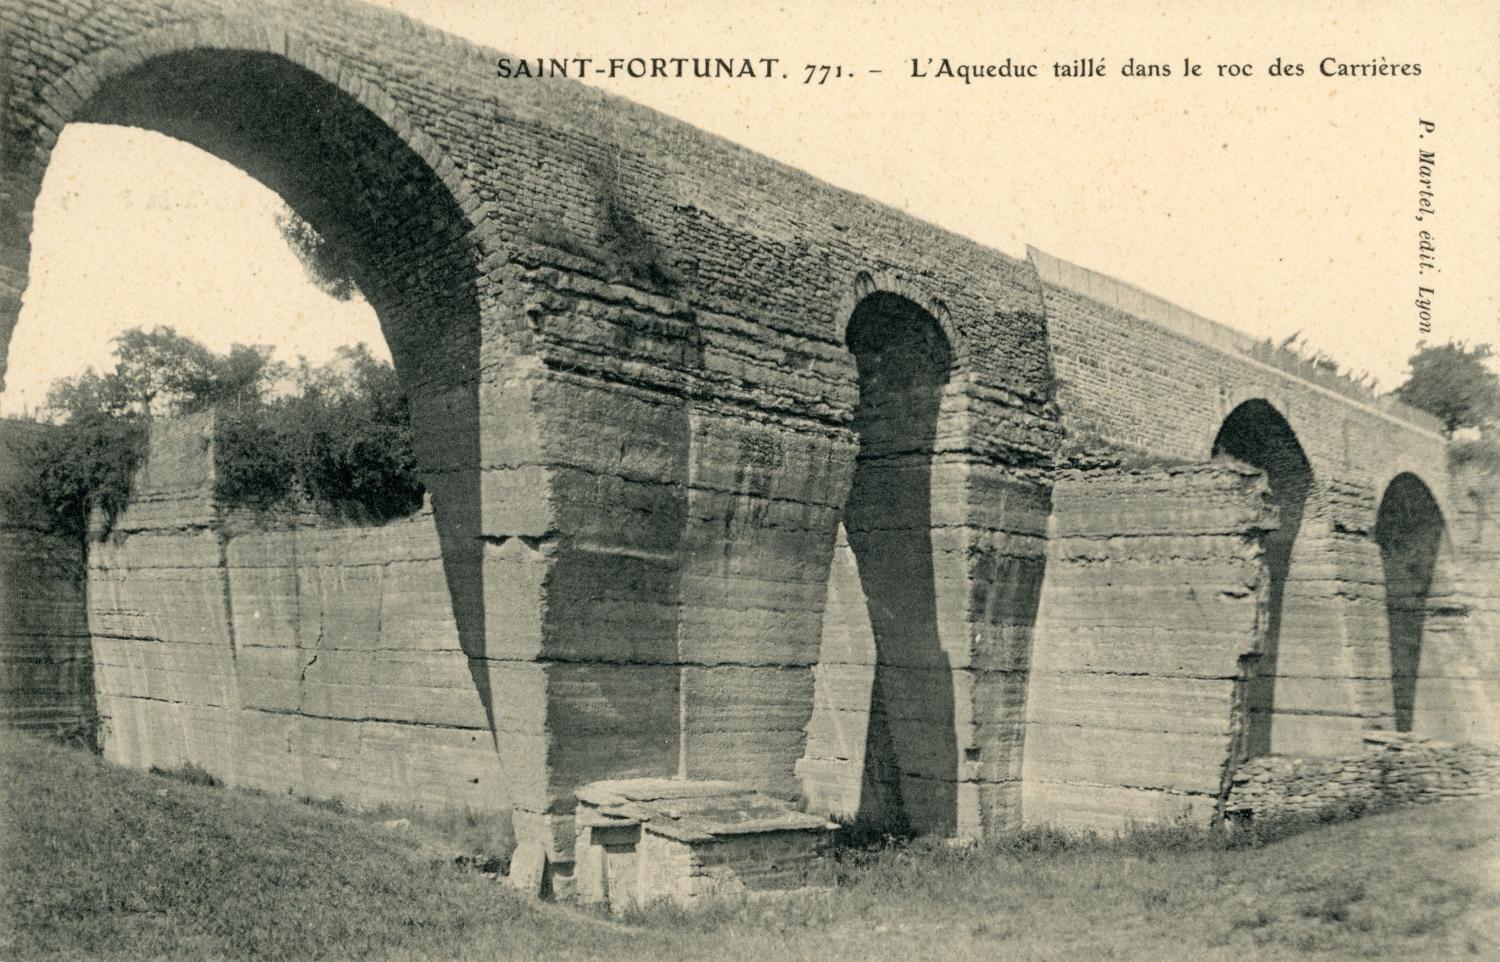 Saint-Fortunat. - L'Aqueduc taillé dans le roc des Carrières